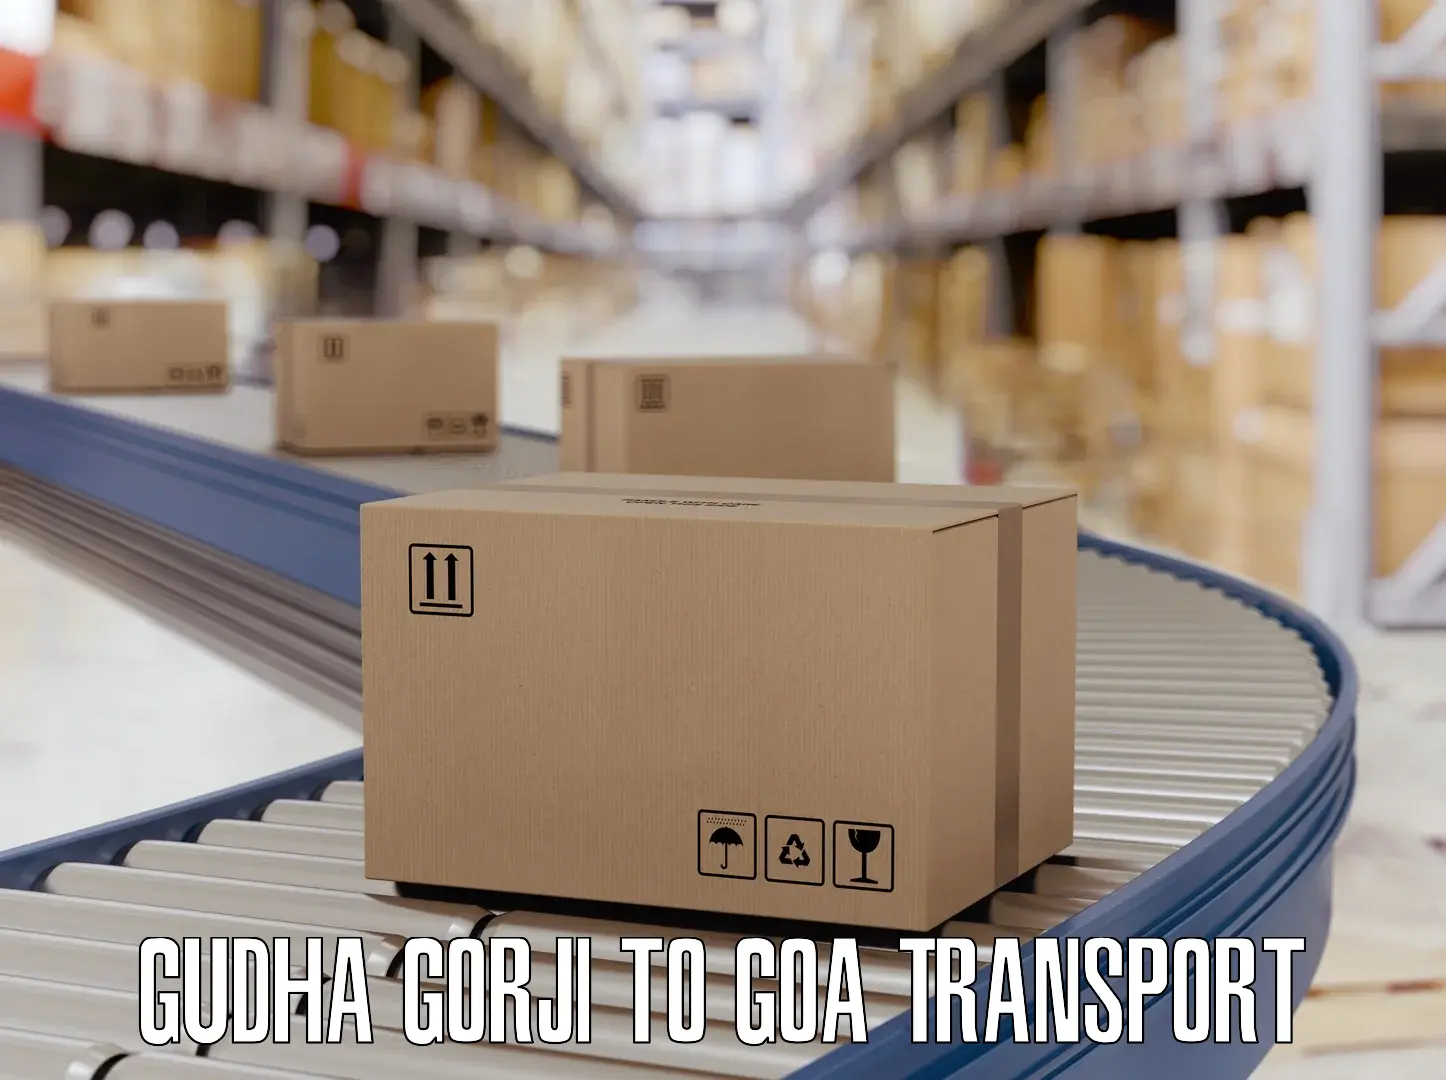 Bike transfer in Gudha Gorji to Goa